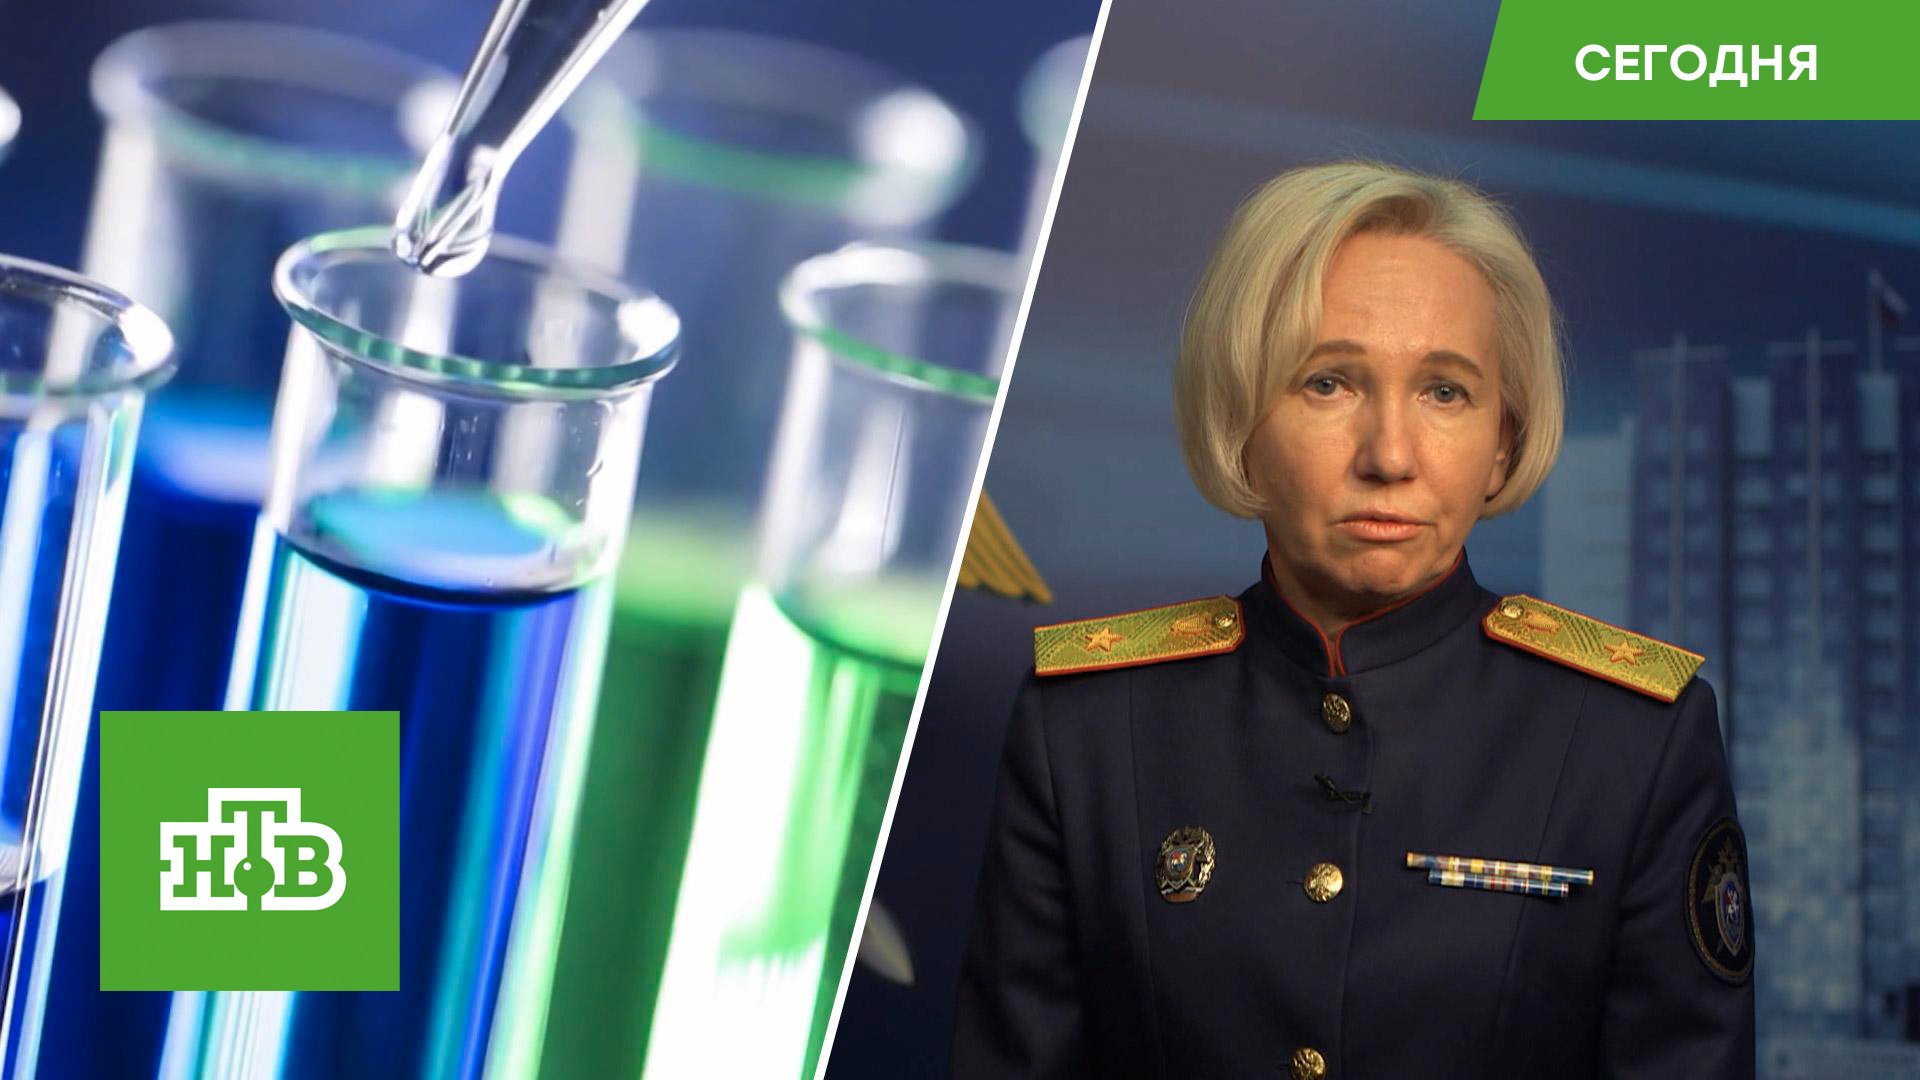 СК изучит данные об испытаниях опасных препаратов на пациентах психбольницы на Украине